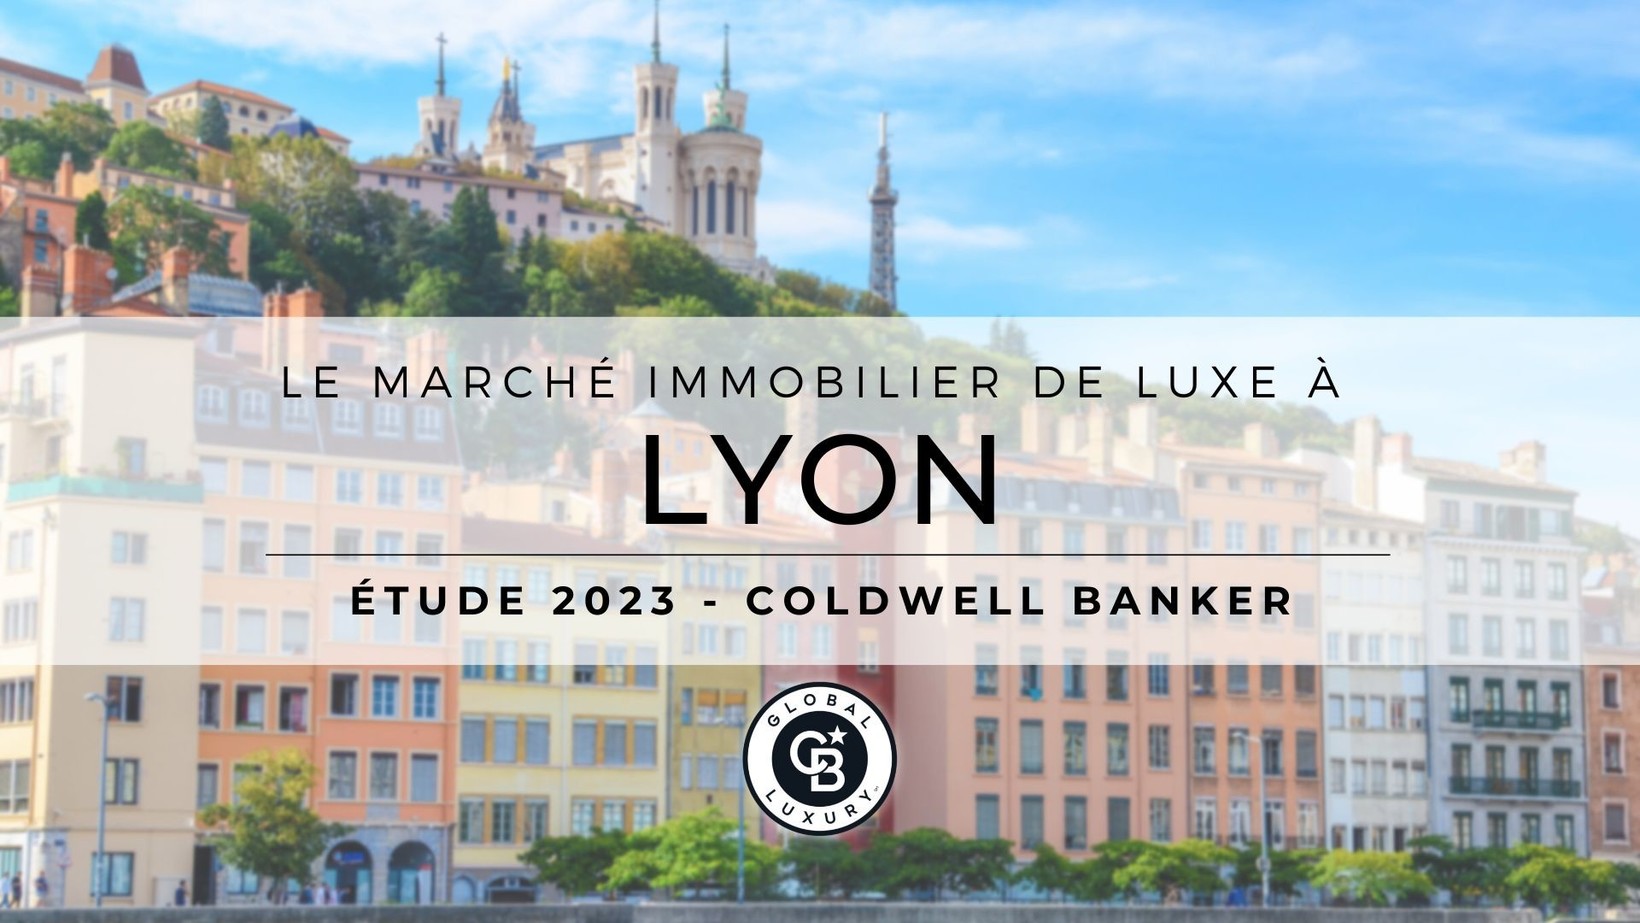 Le marché immobilier de luxe à Lyon en 2022